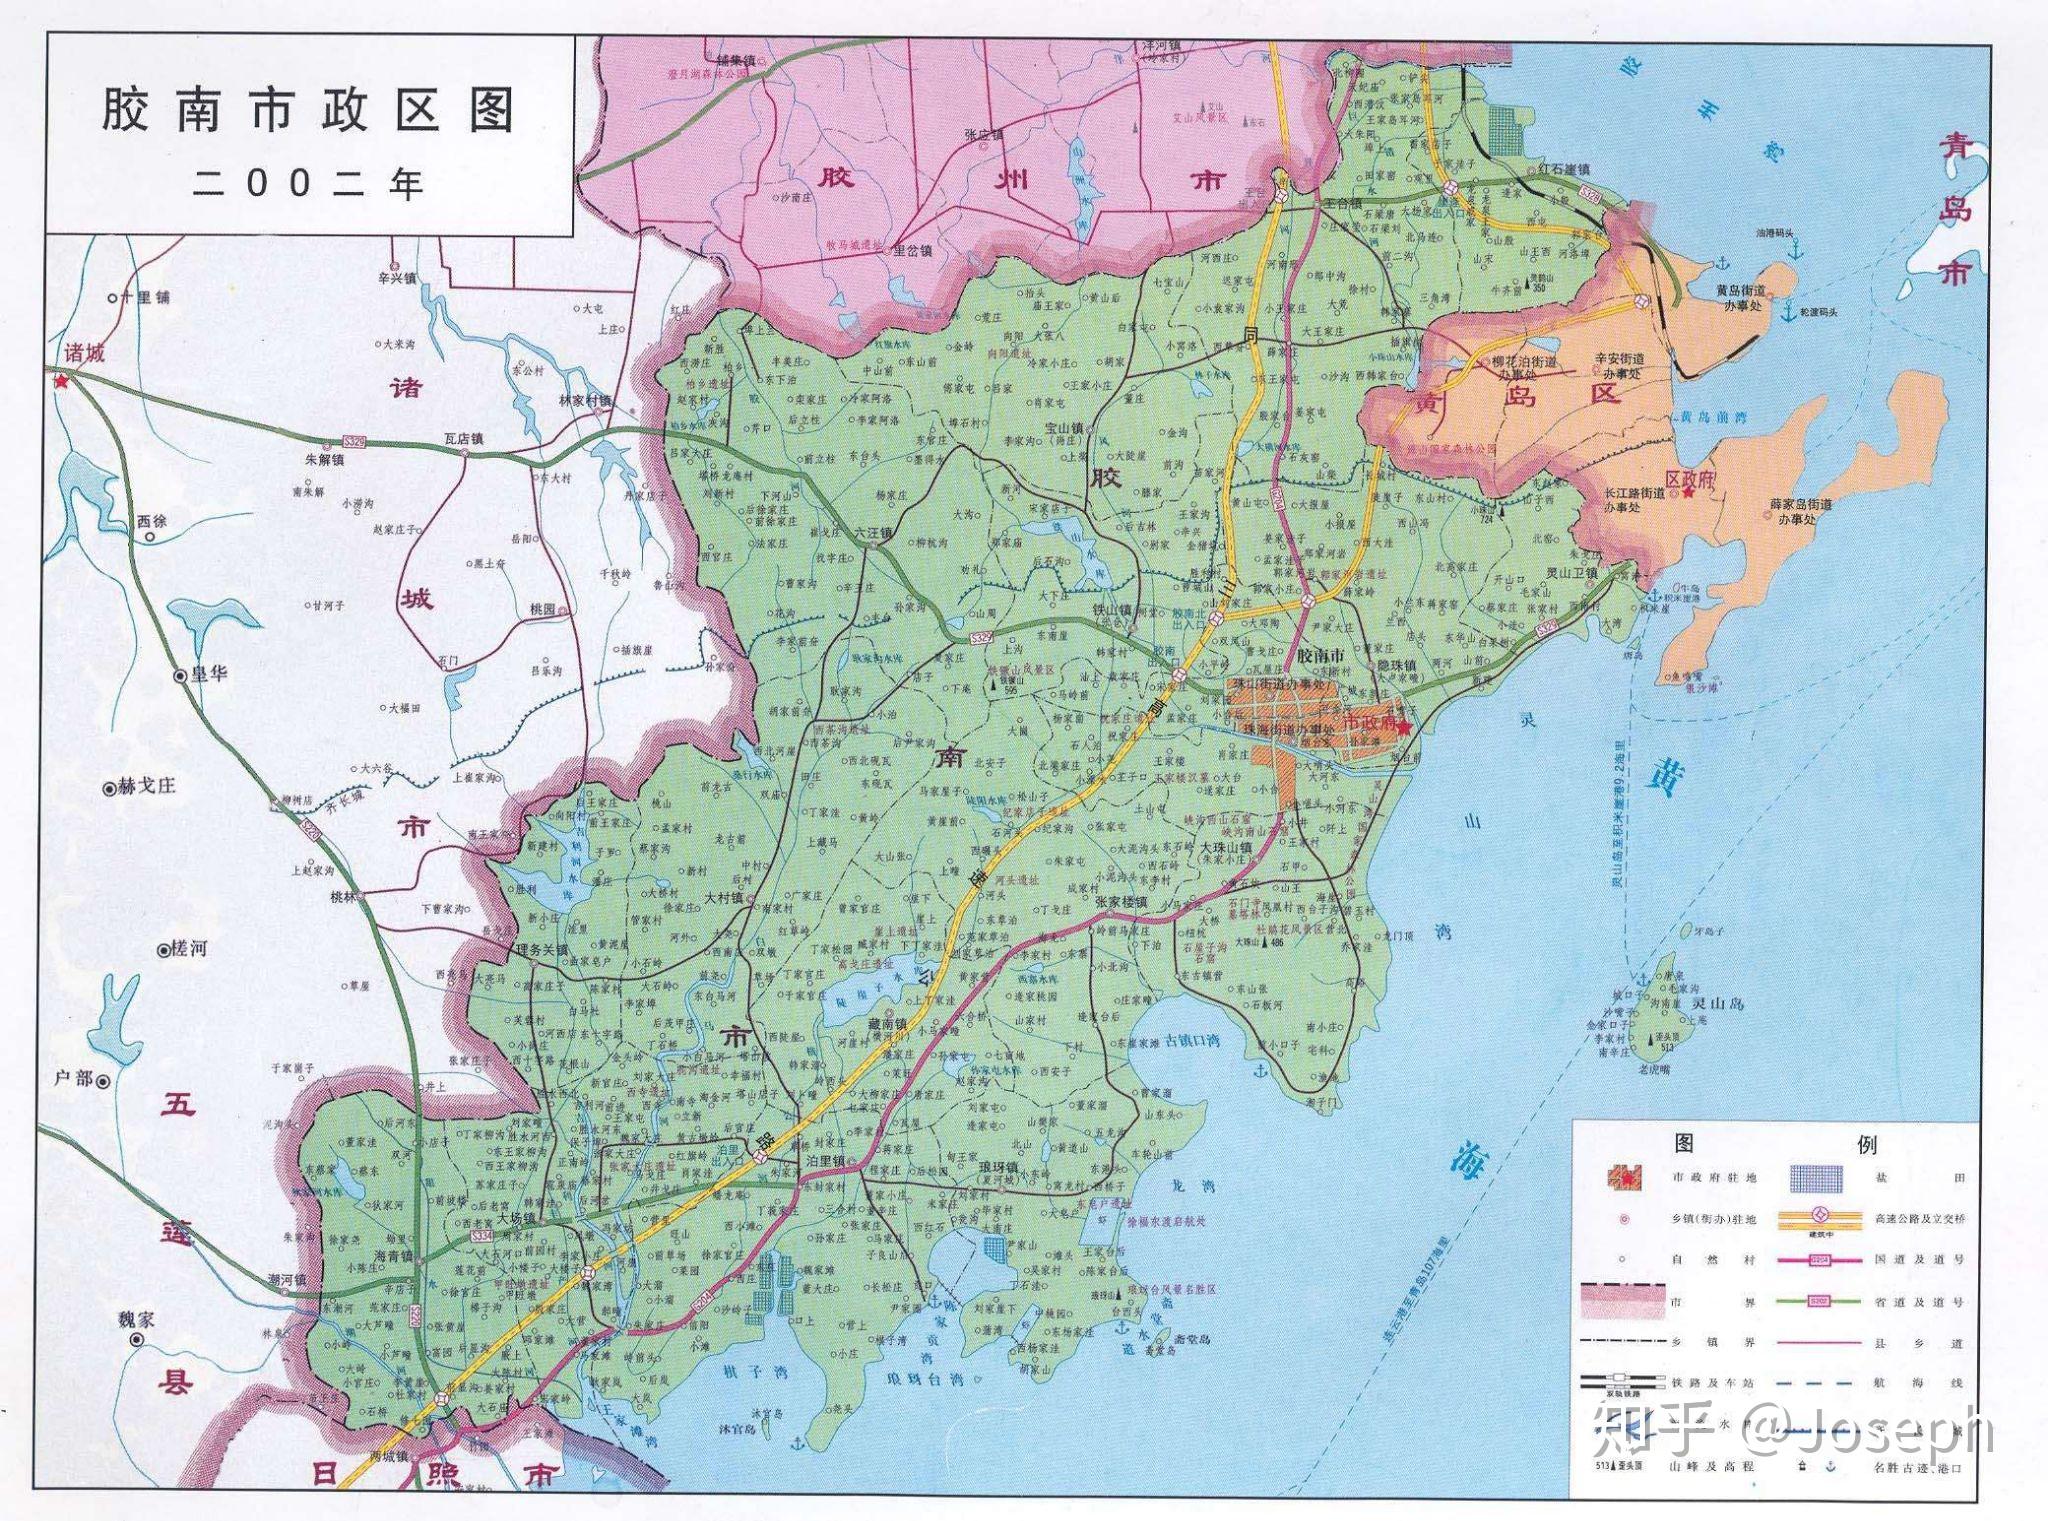 青岛地图|青岛地图全图高清版大图片|旅途风景图片网|www.visacits.com